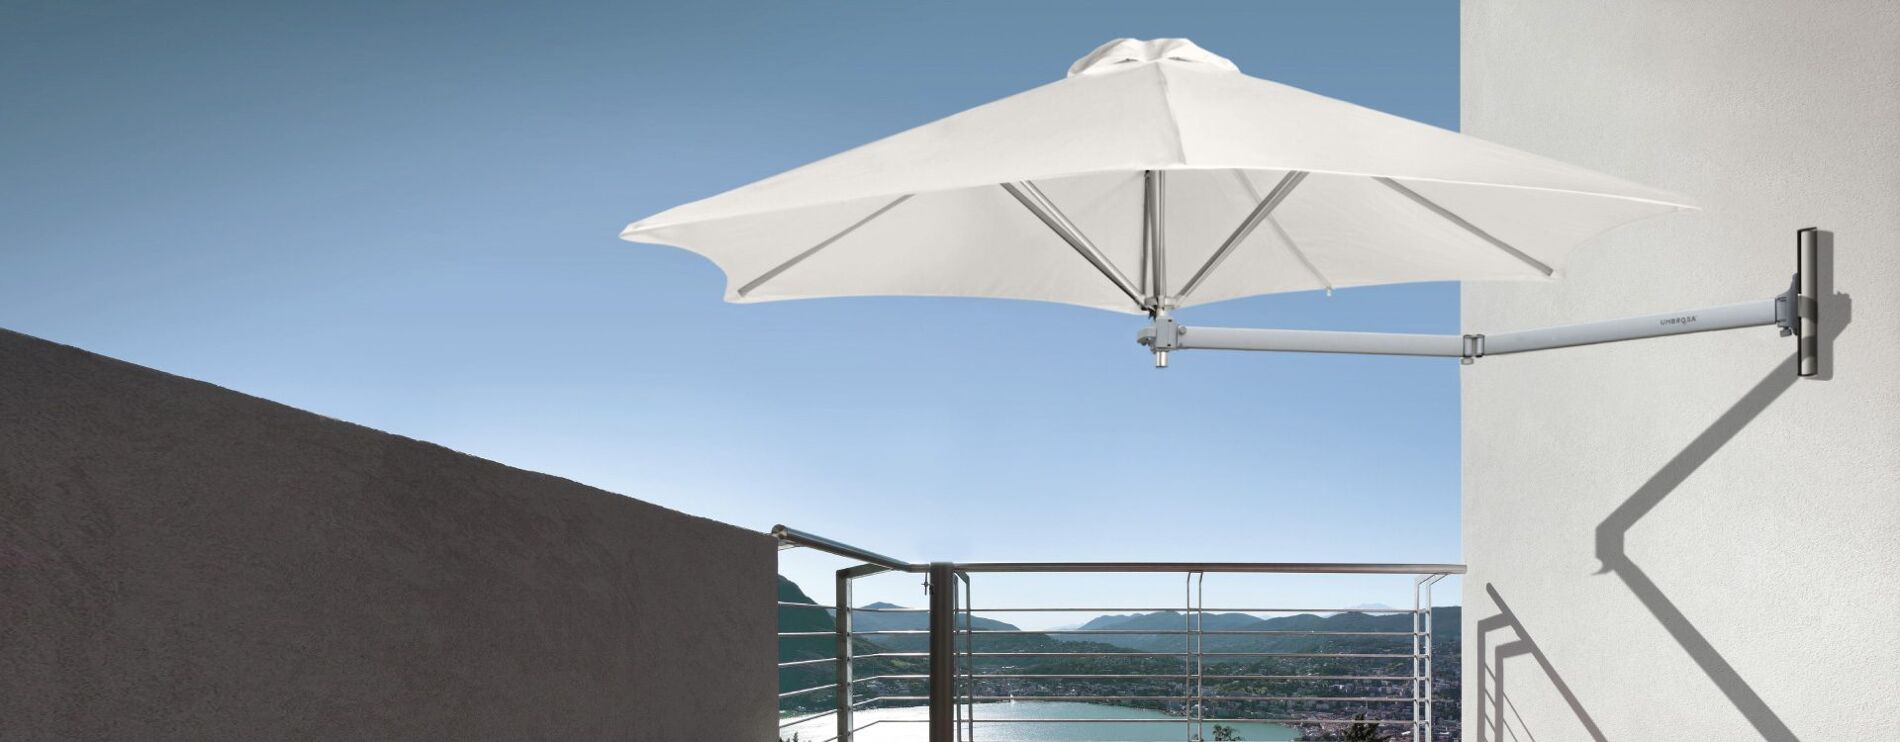 Wall Mounted Outdoor Sun Umbrella